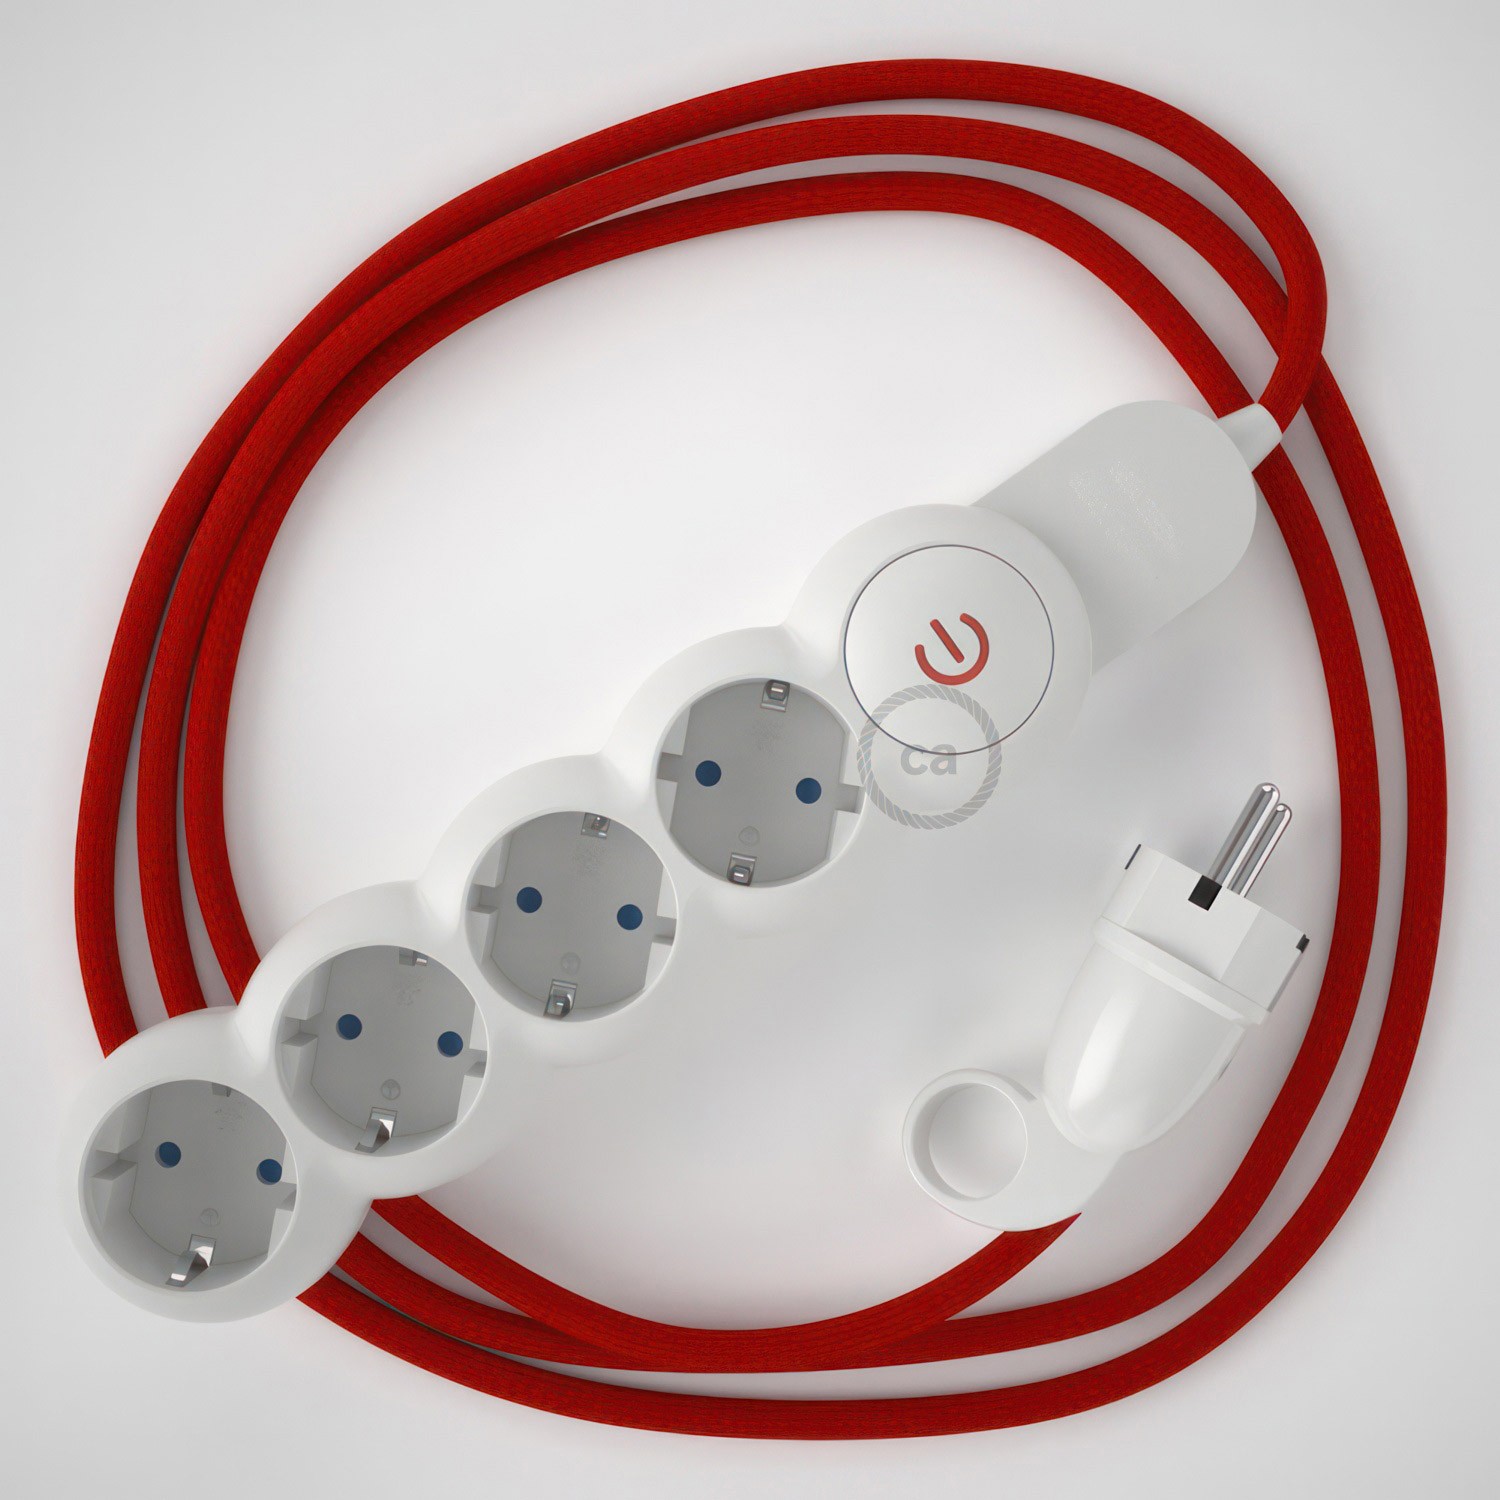 Multienchufe alemán con cable en tejido colorado efecto seda Rojo RM09 y clavija Schuko con anillo comfort